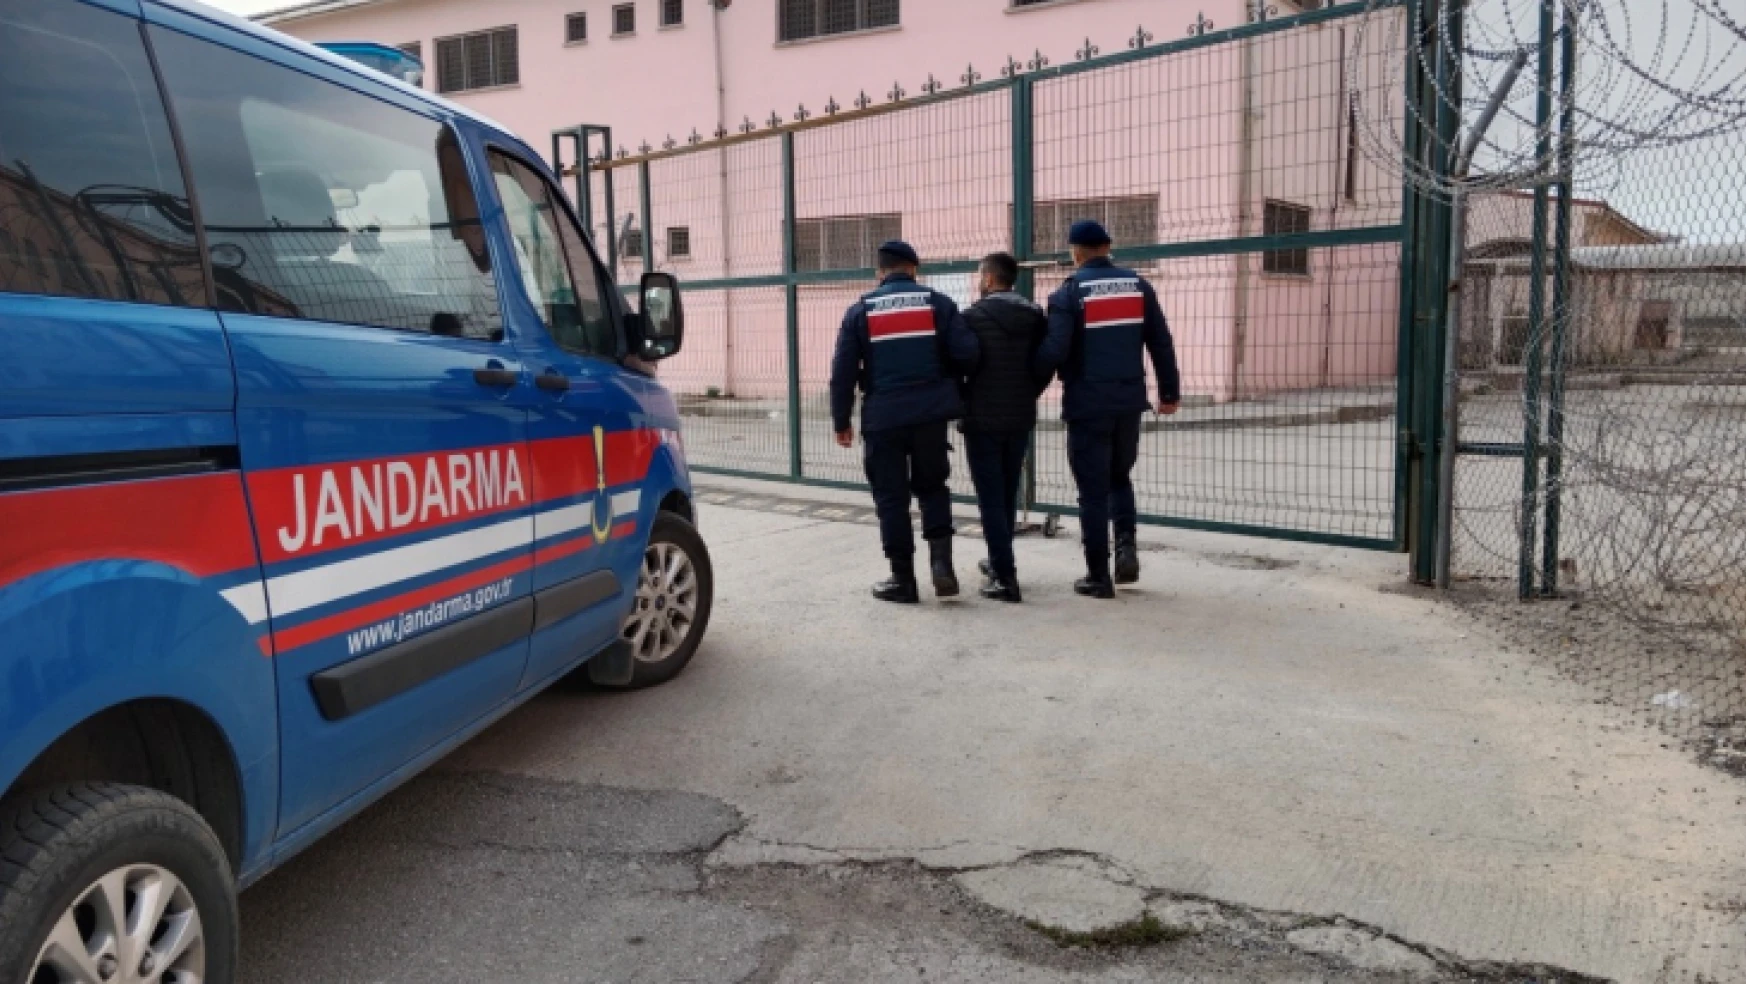 Malatya'da 13 yıl cezası bulunan hırsız jandarma operasyonu ile yakalandı